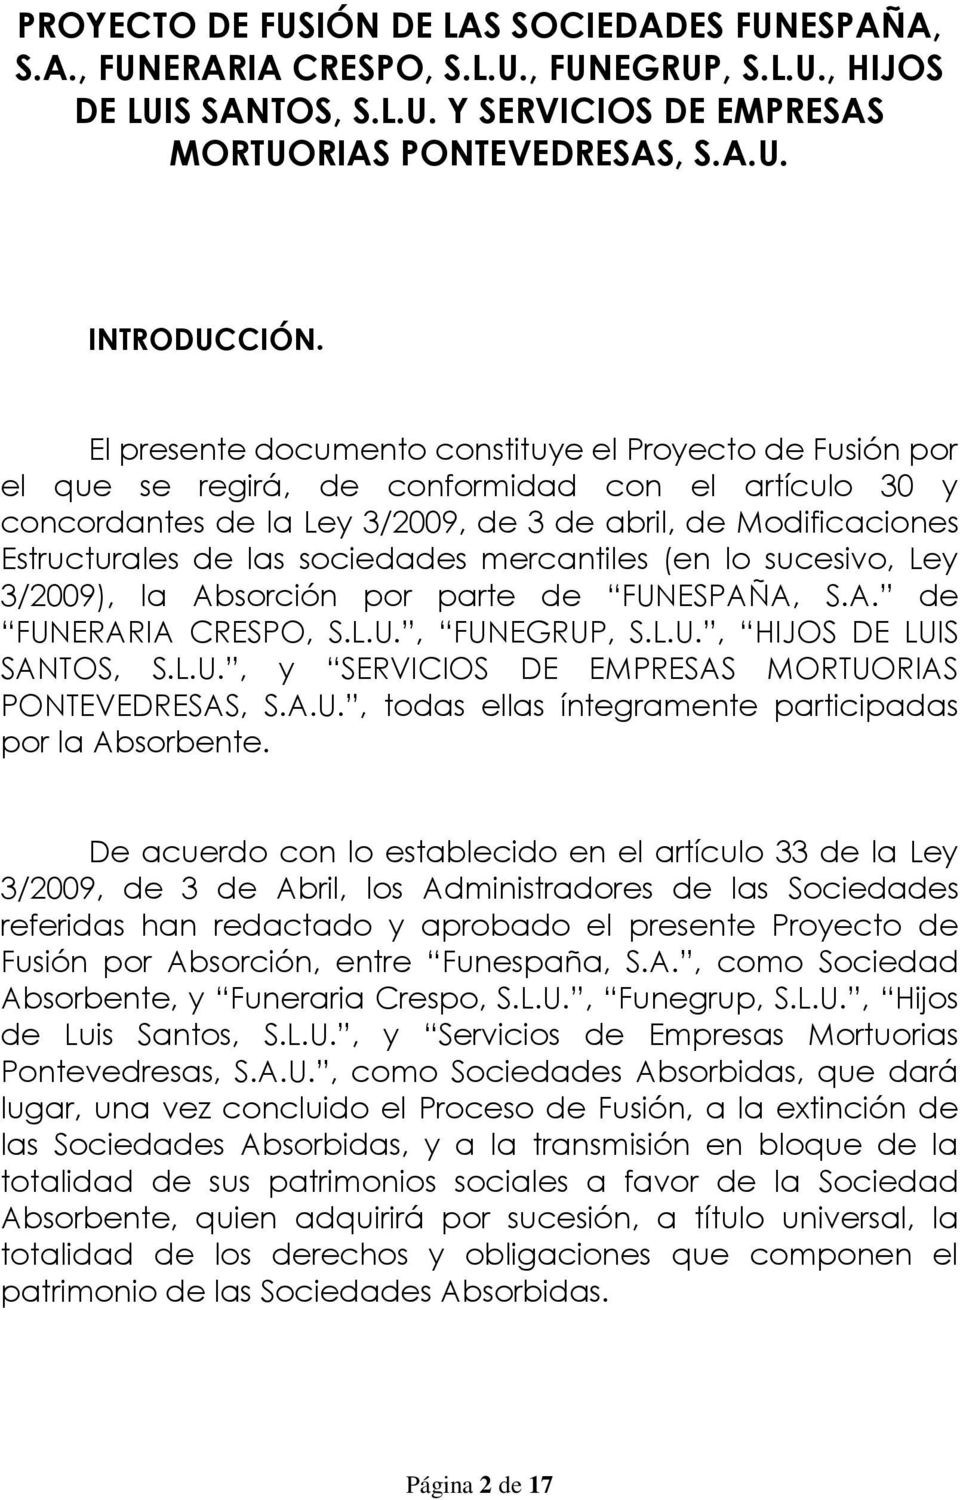 sociedades mercantiles (en lo sucesivo, Ley 3/2009), la Absorción por parte de FUNESPAÑA, S.A. de FUNERARIA CRESPO, S.L.U., FUNEGRUP, S.L.U., HIJOS DE LUIS SANTOS, S.L.U., y SERVICIOS DE EMPRESAS MORTUORIAS PONTEVEDRESAS, S.